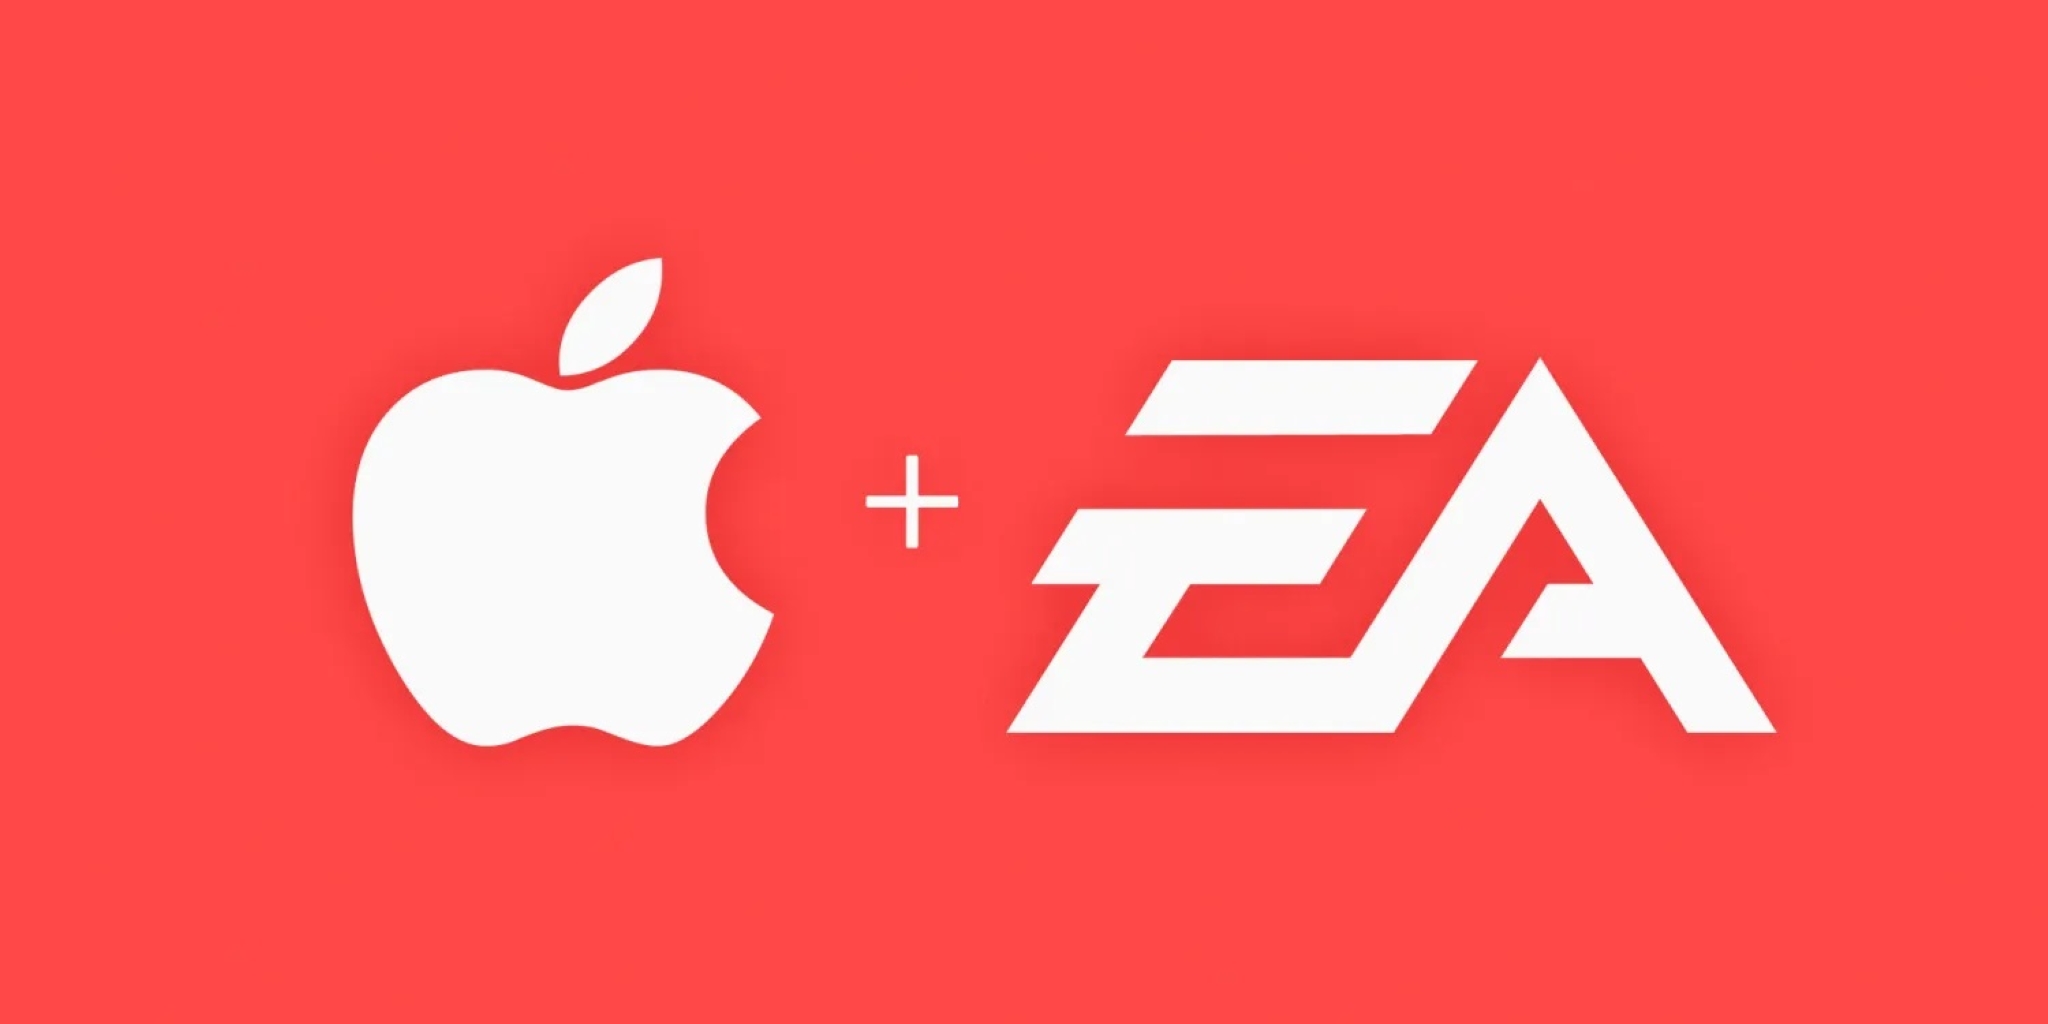 Apple được cho là đang đàm phán để mua lại EA, mức giá chưa được tiết lộ